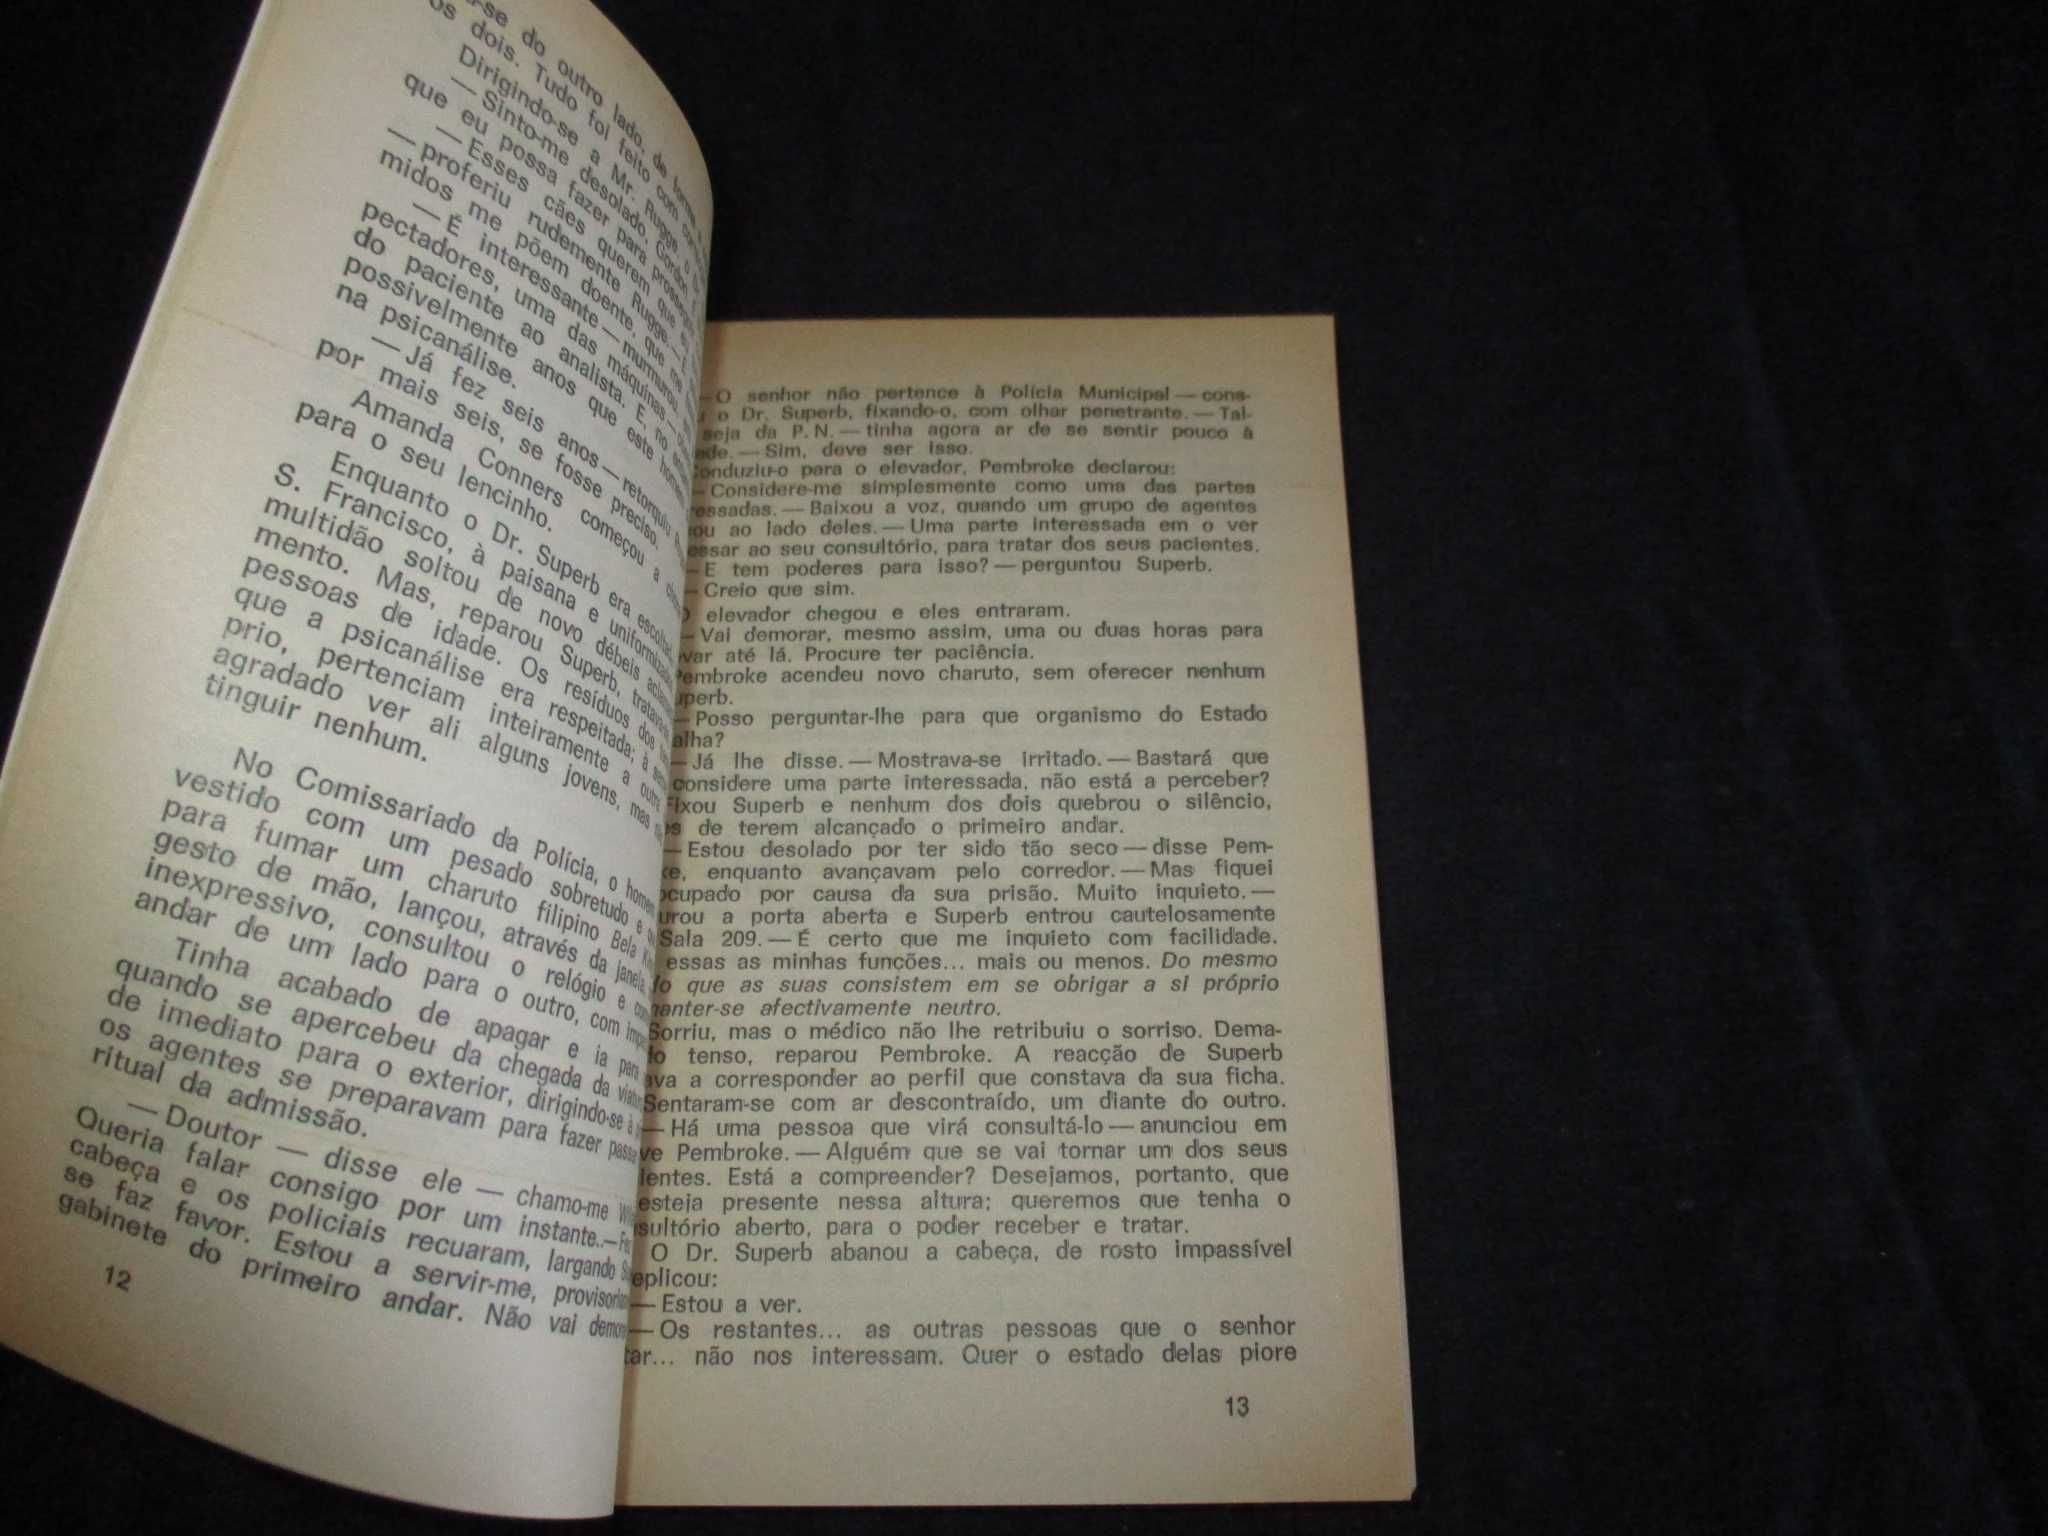 Livros Colecção Argonauta Philip Dick Ray Bradubury Asimov Conan Doyle